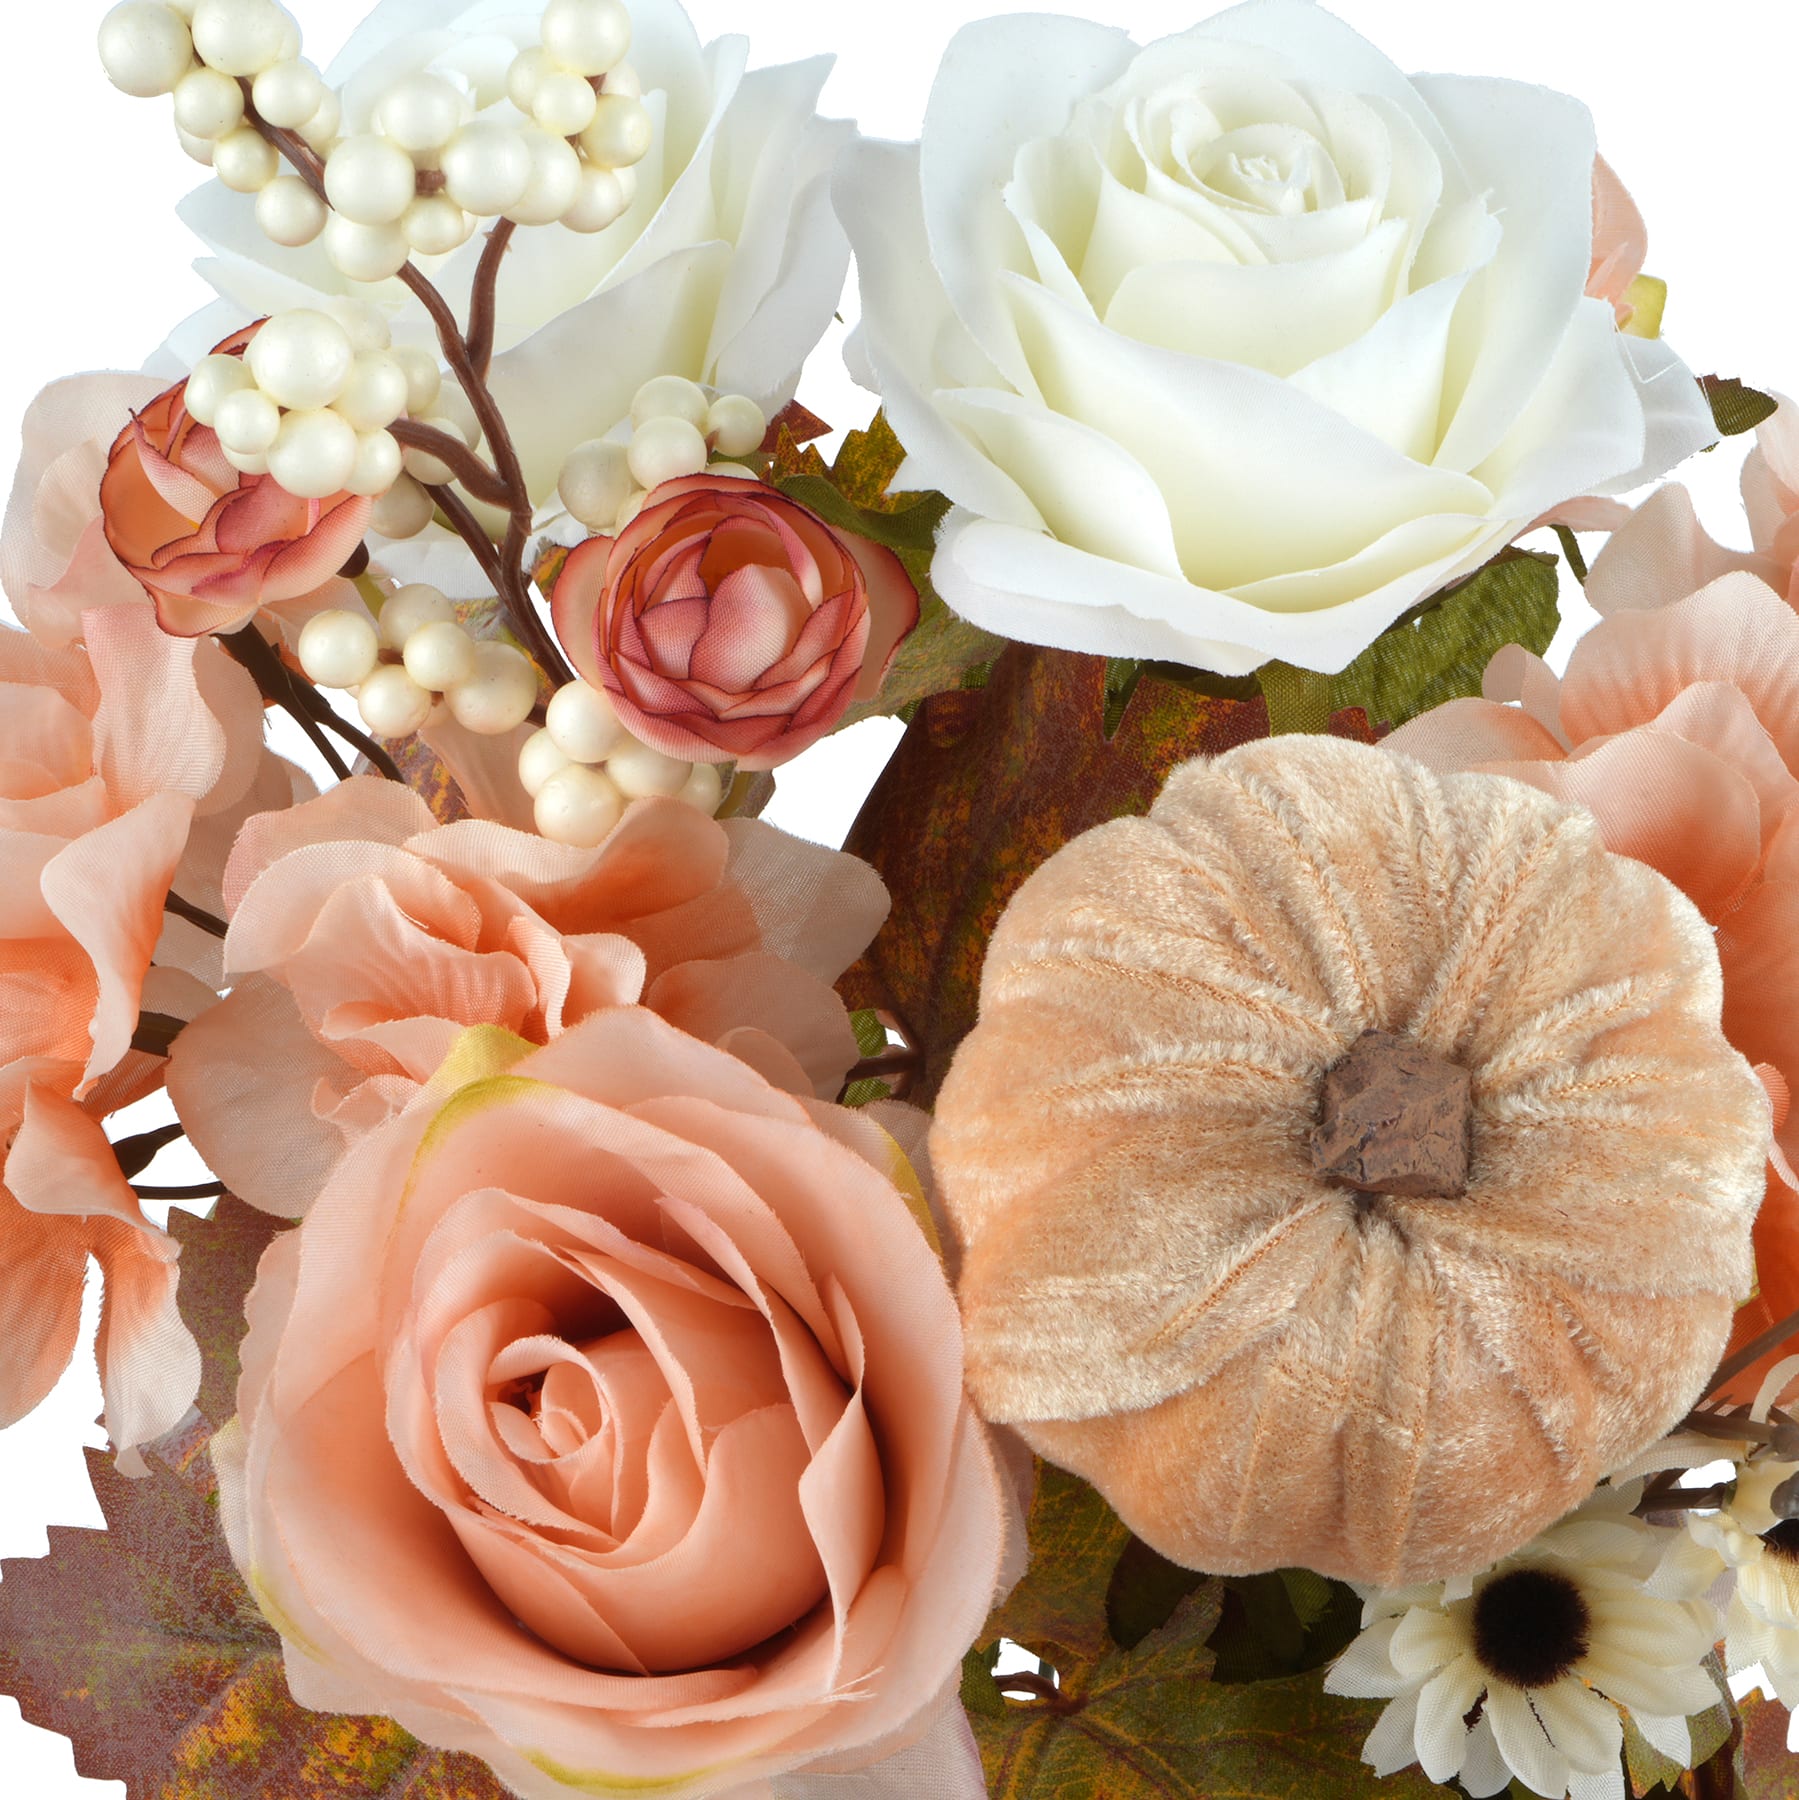 Rose, Hydrangea &#x26; Pumpkin Bush by Ashland&#xAE;